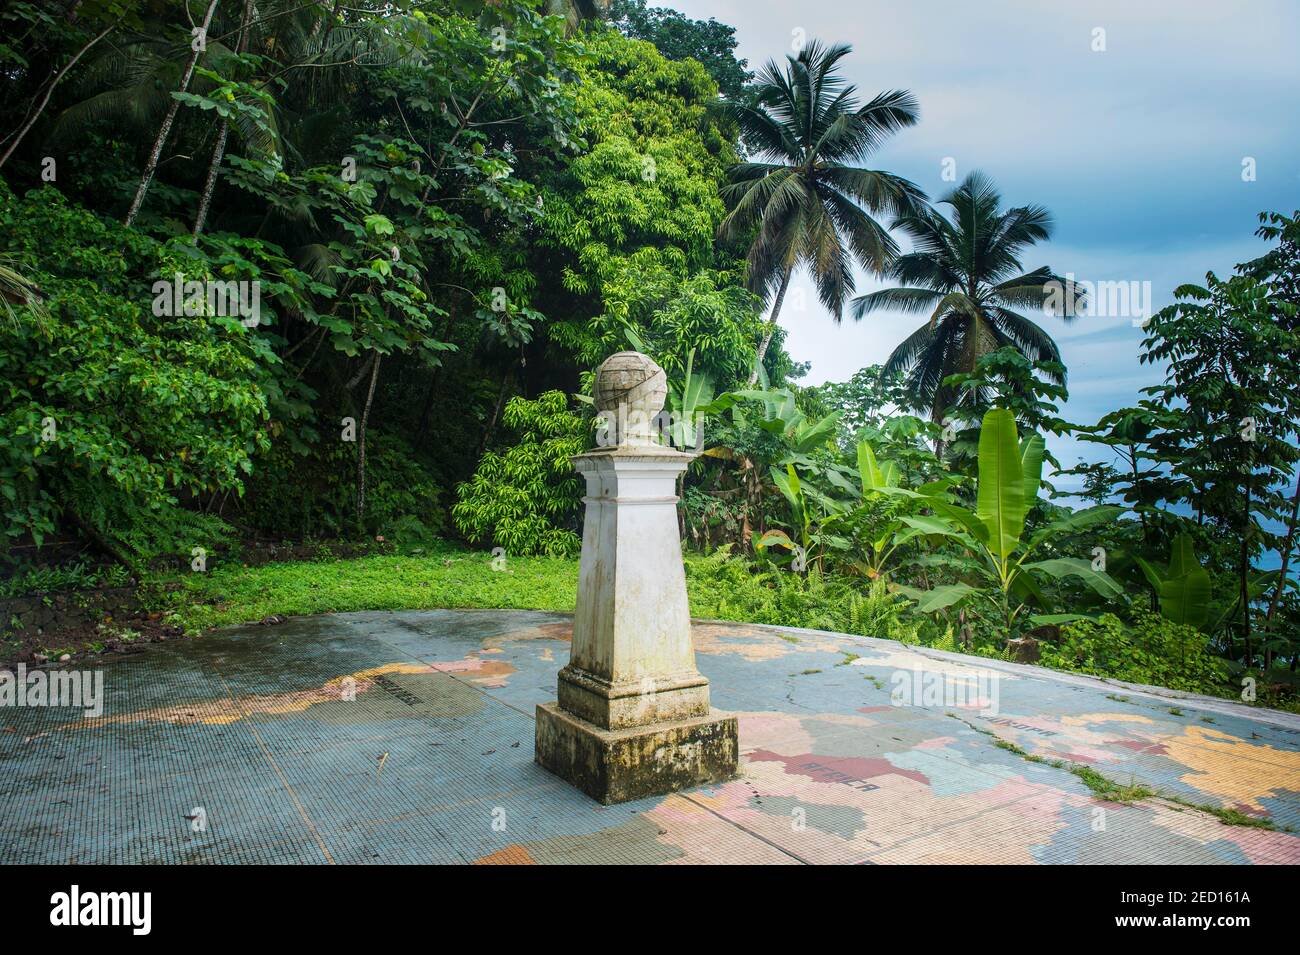 Monumento al centro de la tierra donde se encuentran el meridiano cero y el Ecuador, Ilheu das Rolas, Santo Tomé y Príncipe, Océano Atlántico Foto de stock